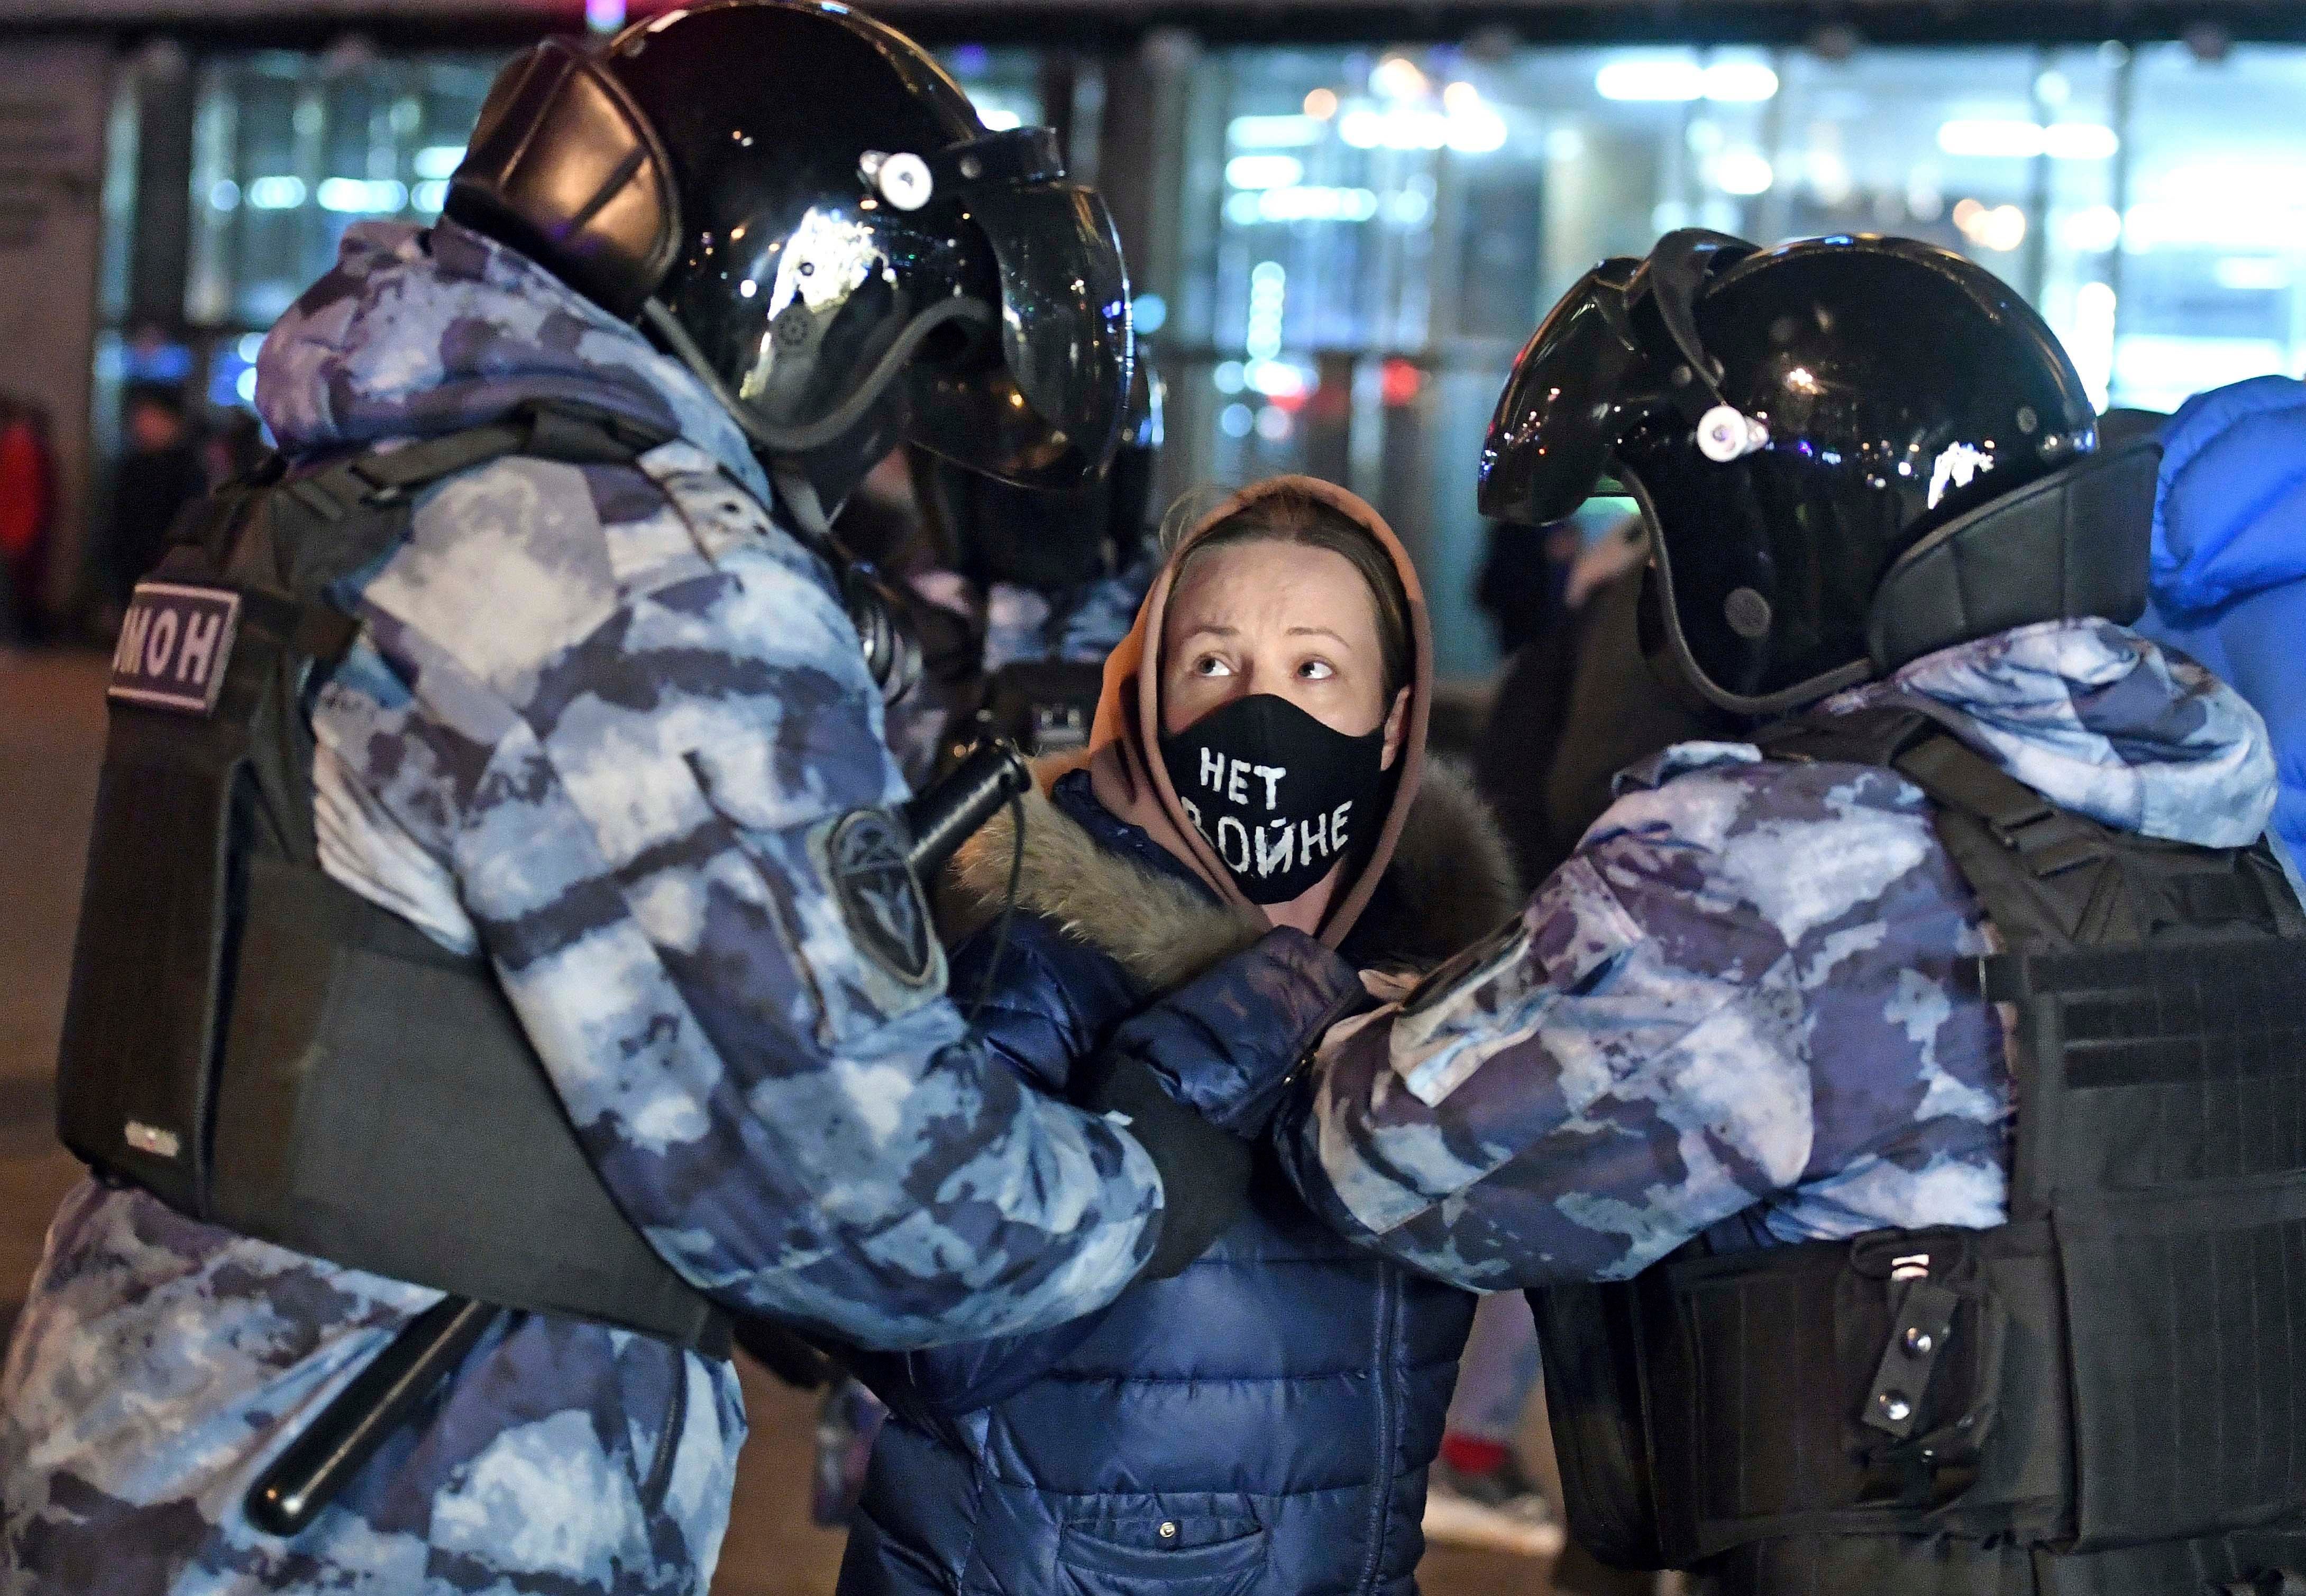 Une jeune manifestante est arrêtée par deux policiers sur la place Pouchkine, à Moscou, le 24 février 2022, lors d’une manifestation contre les opérations militaires de grande ampleur contre l’Ukraine ordonnées par le président Vladimir Poutine. Sur son masque, en lettres blanches, est inscrit le message « Non à la guerre ».